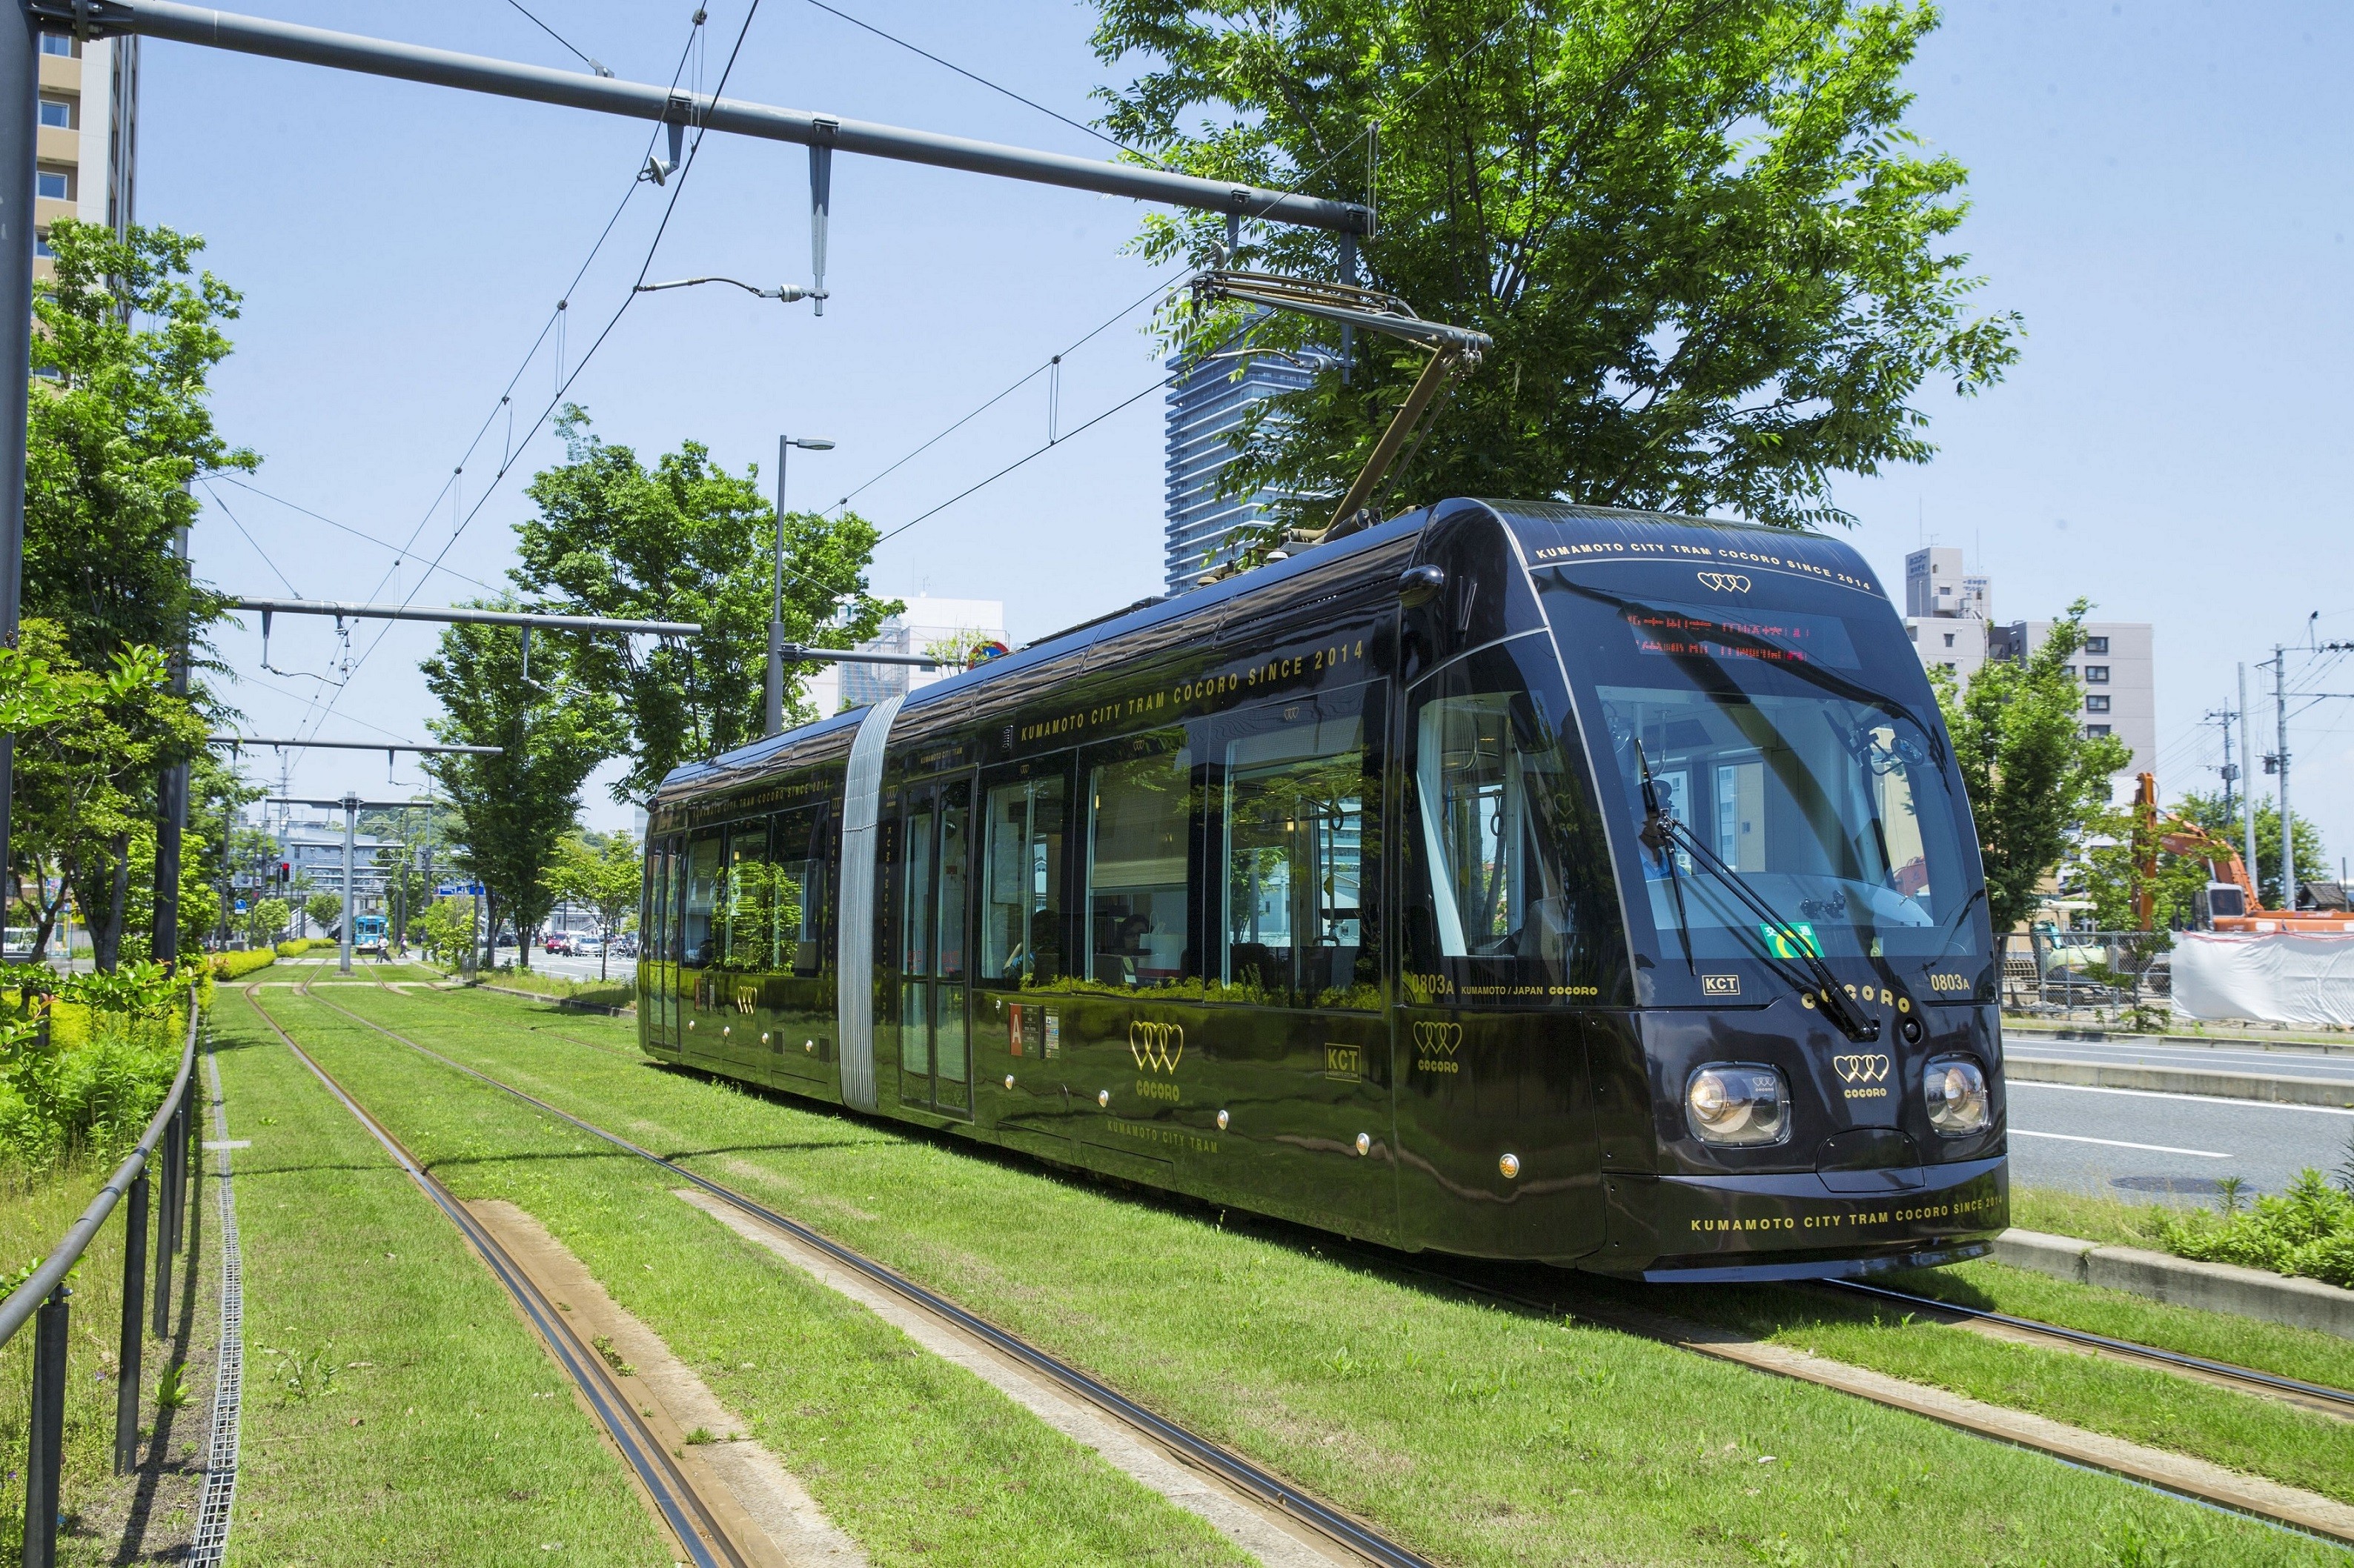 熊本市電－路面電車で市街地観光を楽しもう